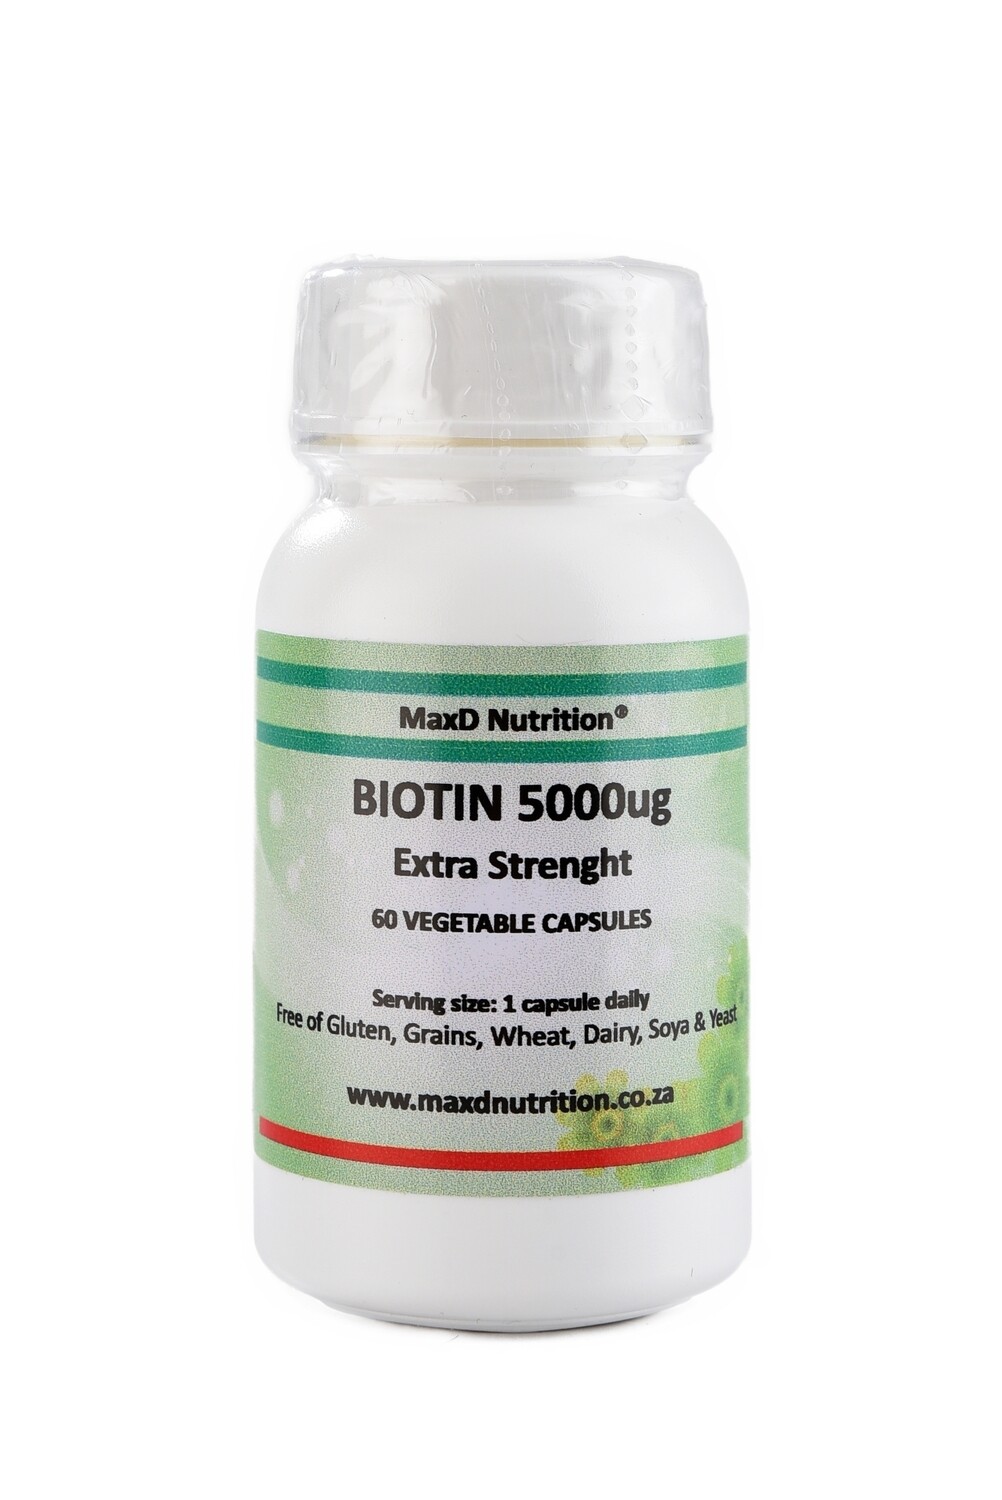 MaxD Nutrition Biotin 5000ug